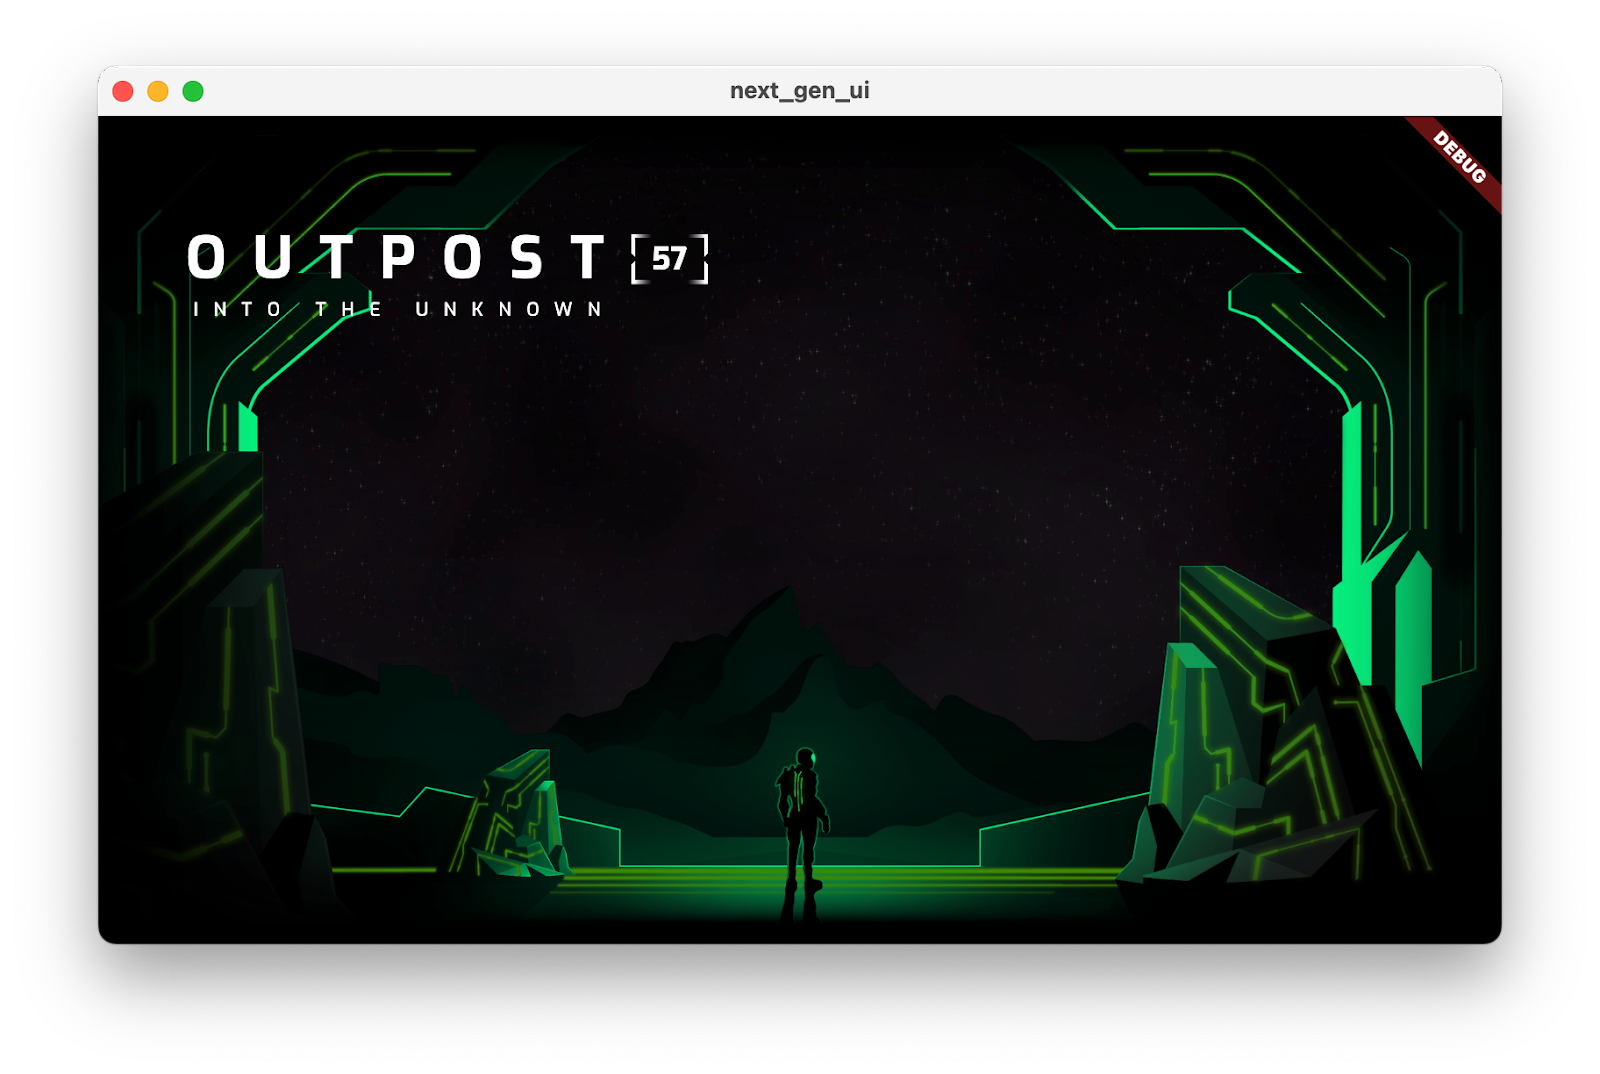 La app del codelab que se ejecuta con el título "Outpost [57] Into the Unknown"